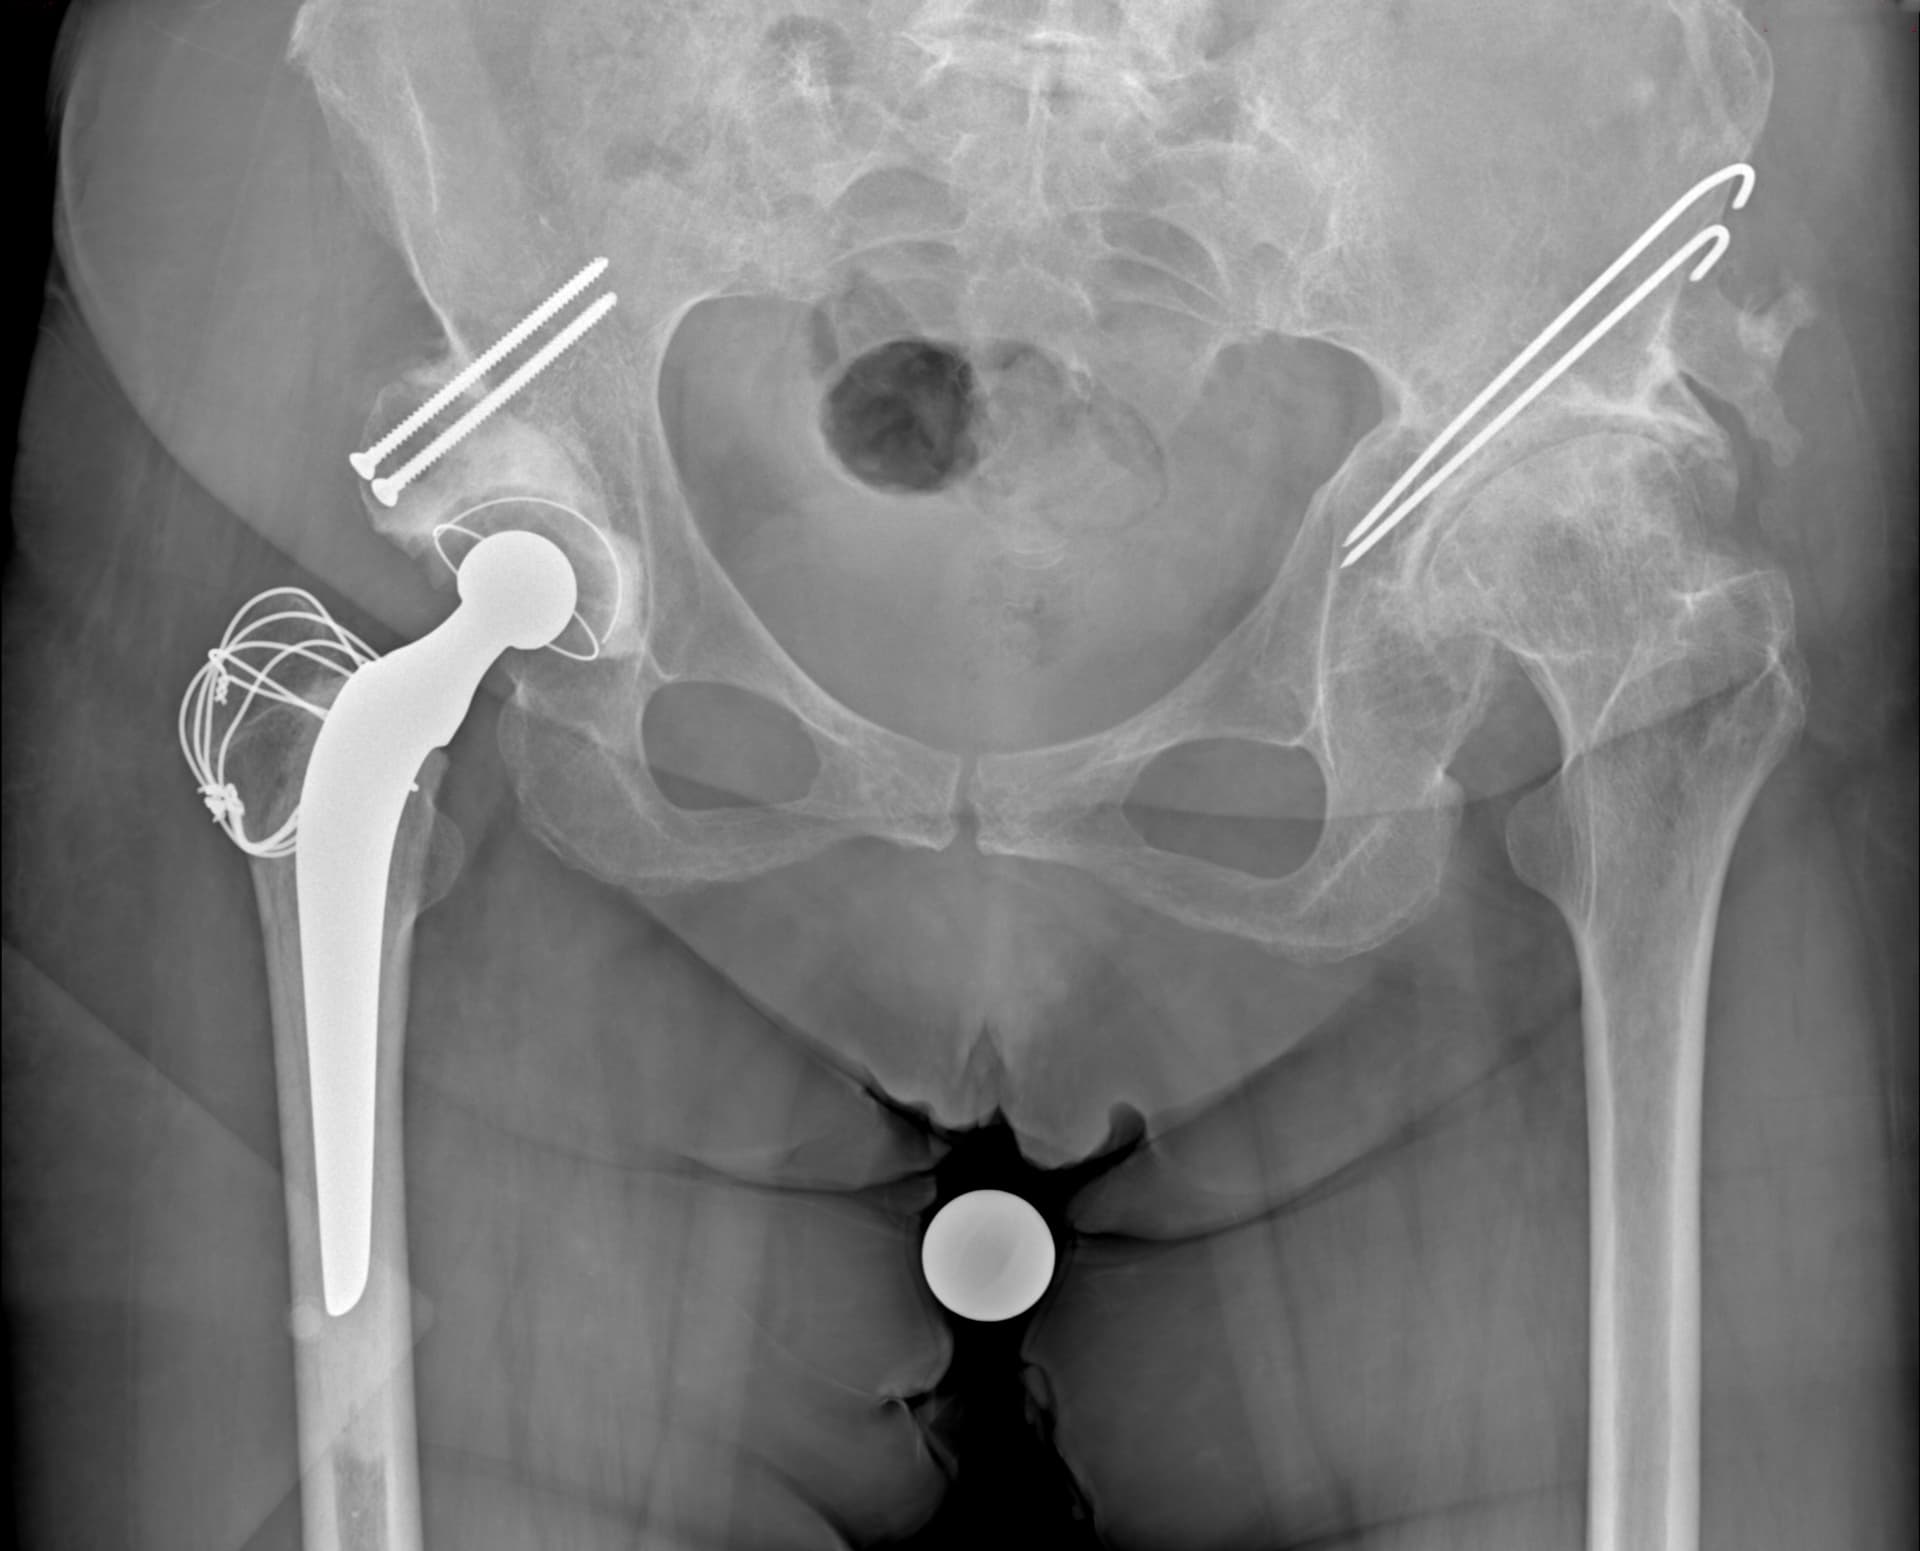 Radiographie post opératoire: pose d'une prothèse totale de hanche droite cimentée par voie transtrochantérienne (trochantérotomie) selon la technique de Cochin avec confection d'une butée osseuse.